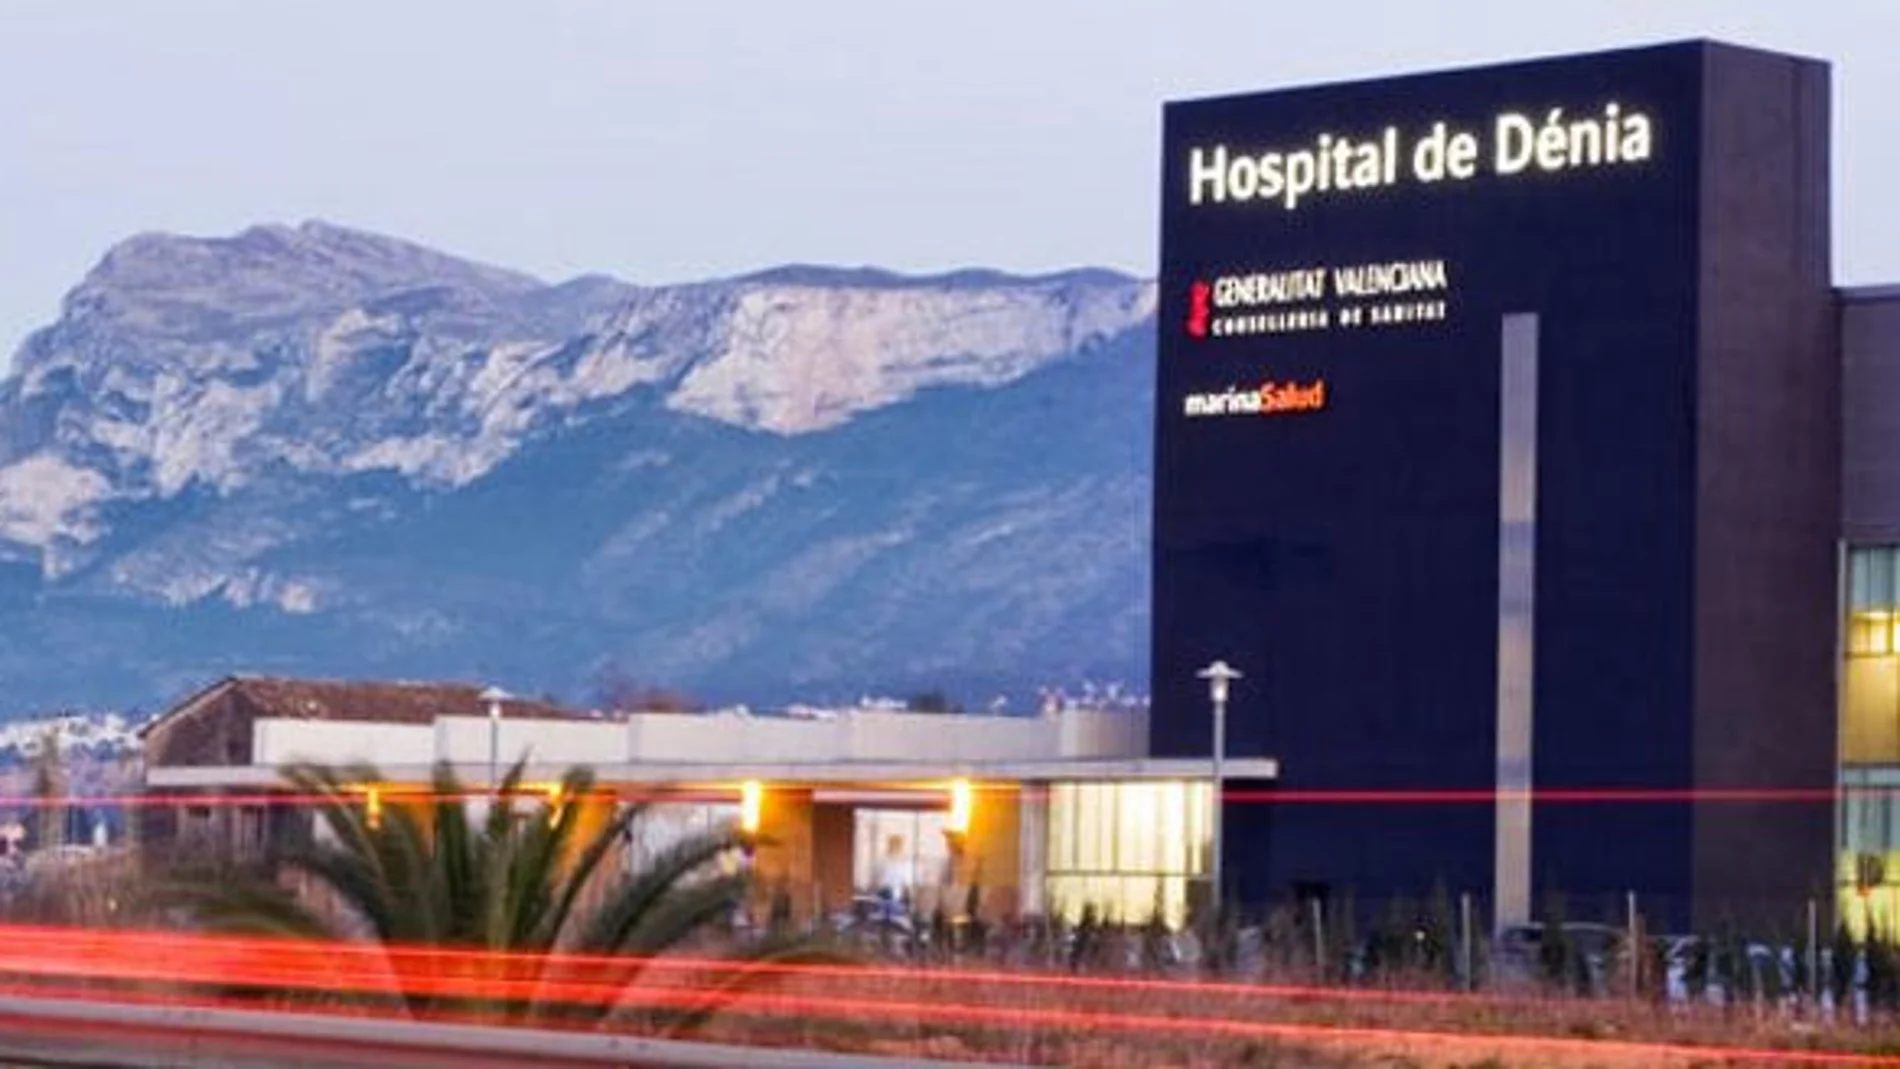 El hospital público de Dénia está gestionado por la UTE Marina Salud, participada al 65 por ciento por DKV y al 35 por ciento por Ribera Salud